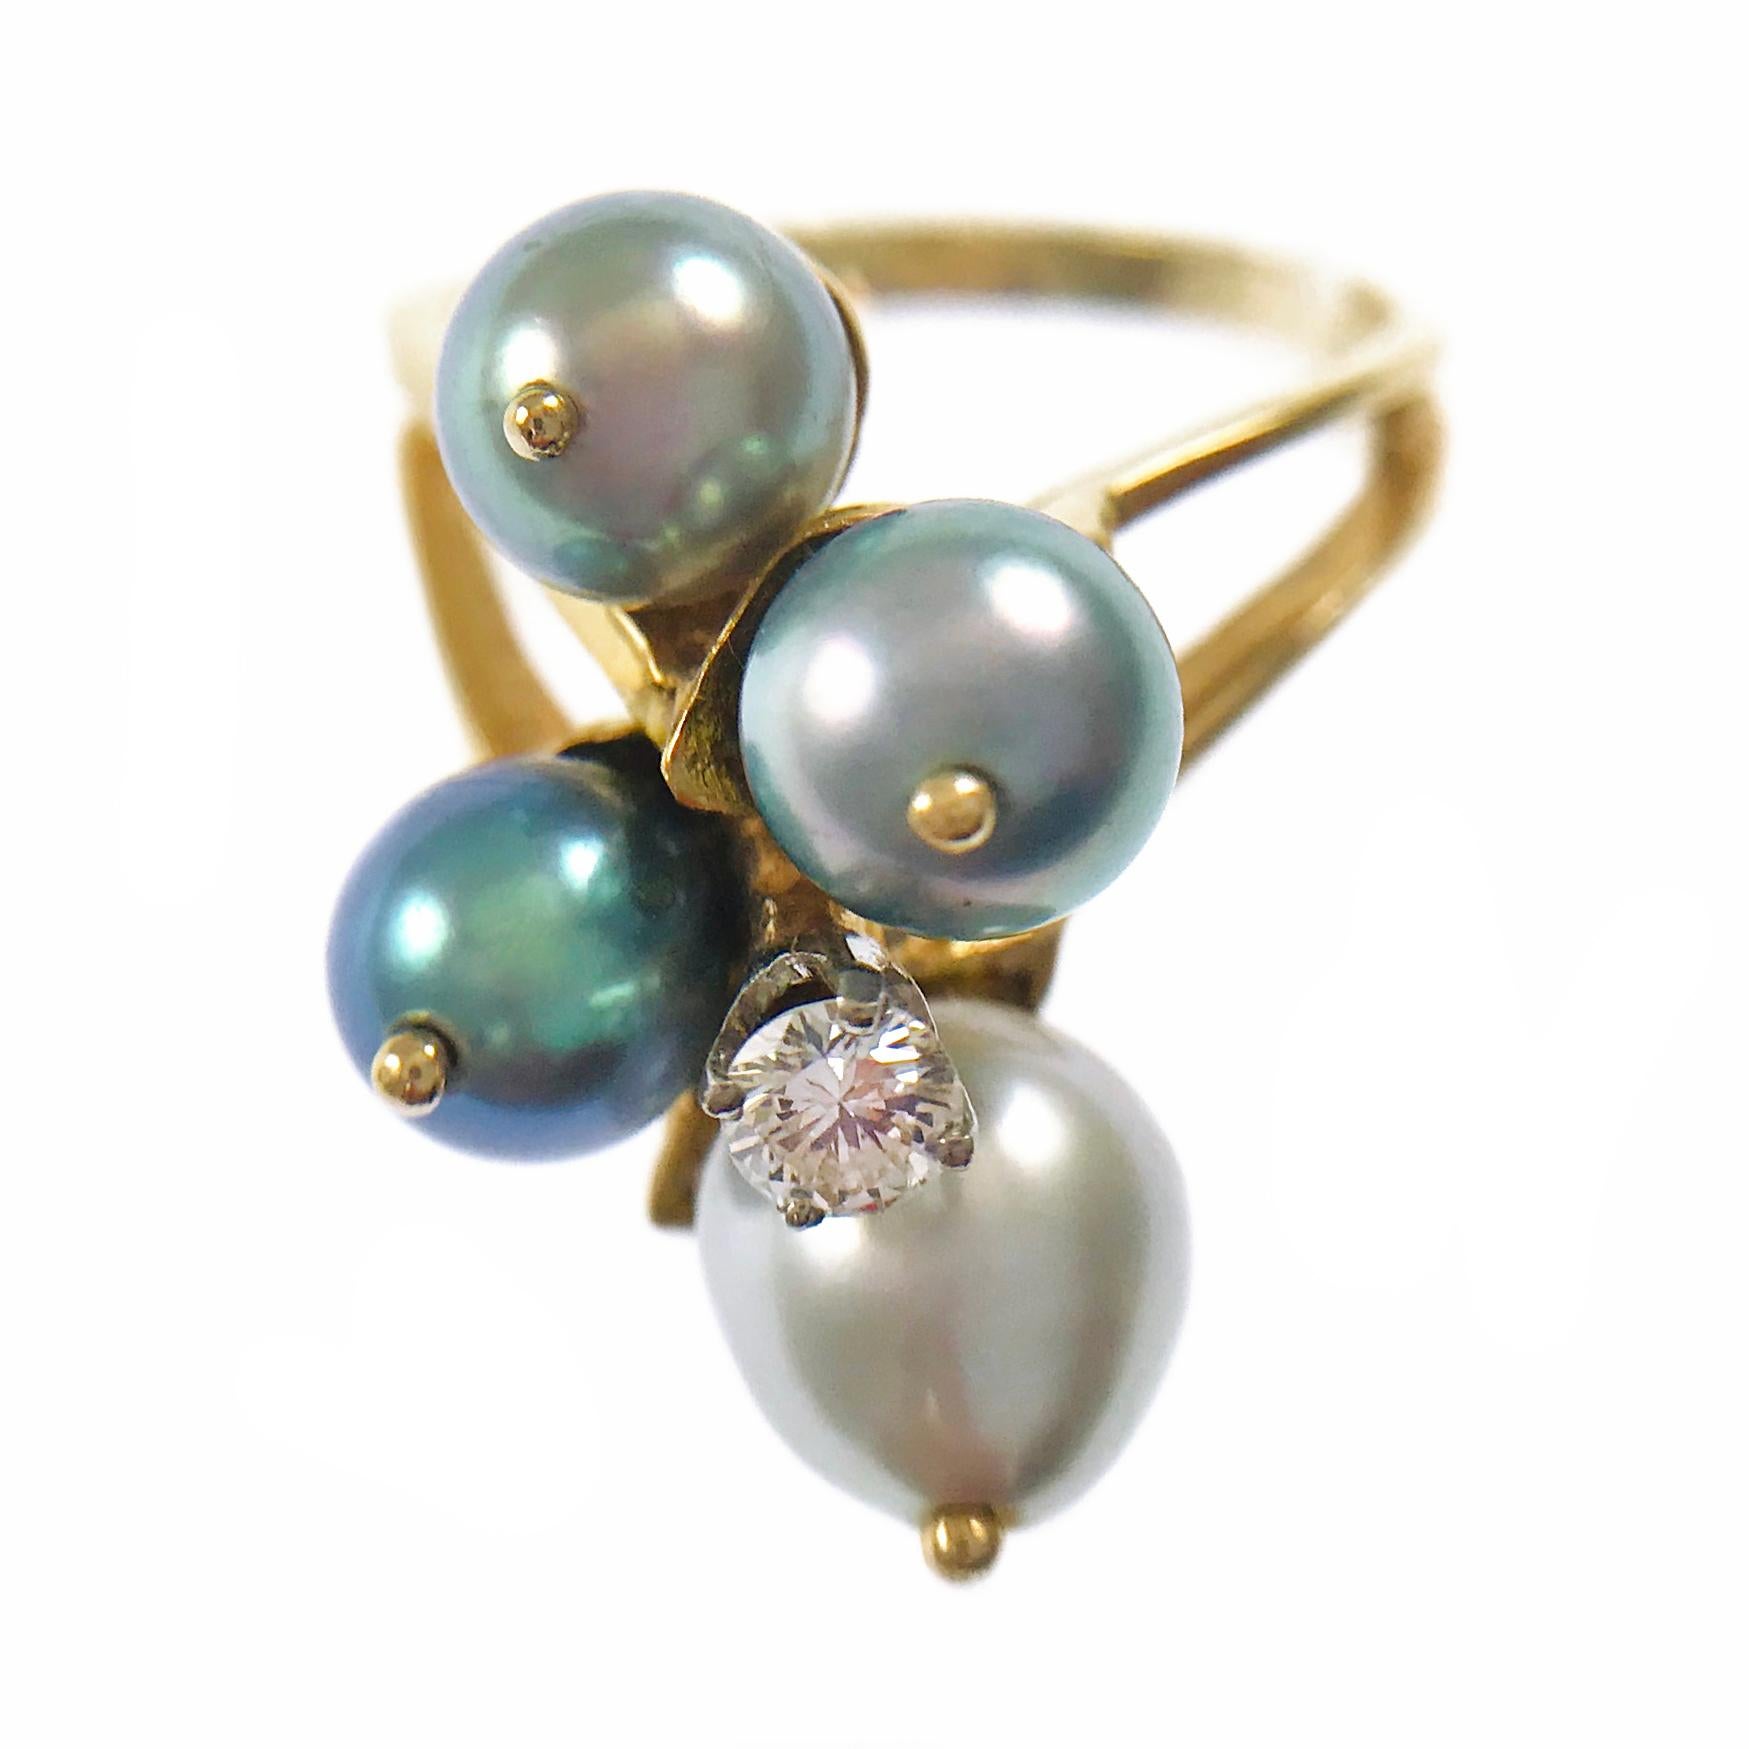 14 Karat blau-grauer Zuchtperlen-Diamant-Ring. Dieser Ring mit geteiltem Band besteht aus vier blaugrauen Perlen und einem einzelnen, in vier Zacken gefassten Diamanten. Die Perlen haben eine Größe von 6,2 mm bis 7,2 mm, drei sind rund und eine ist